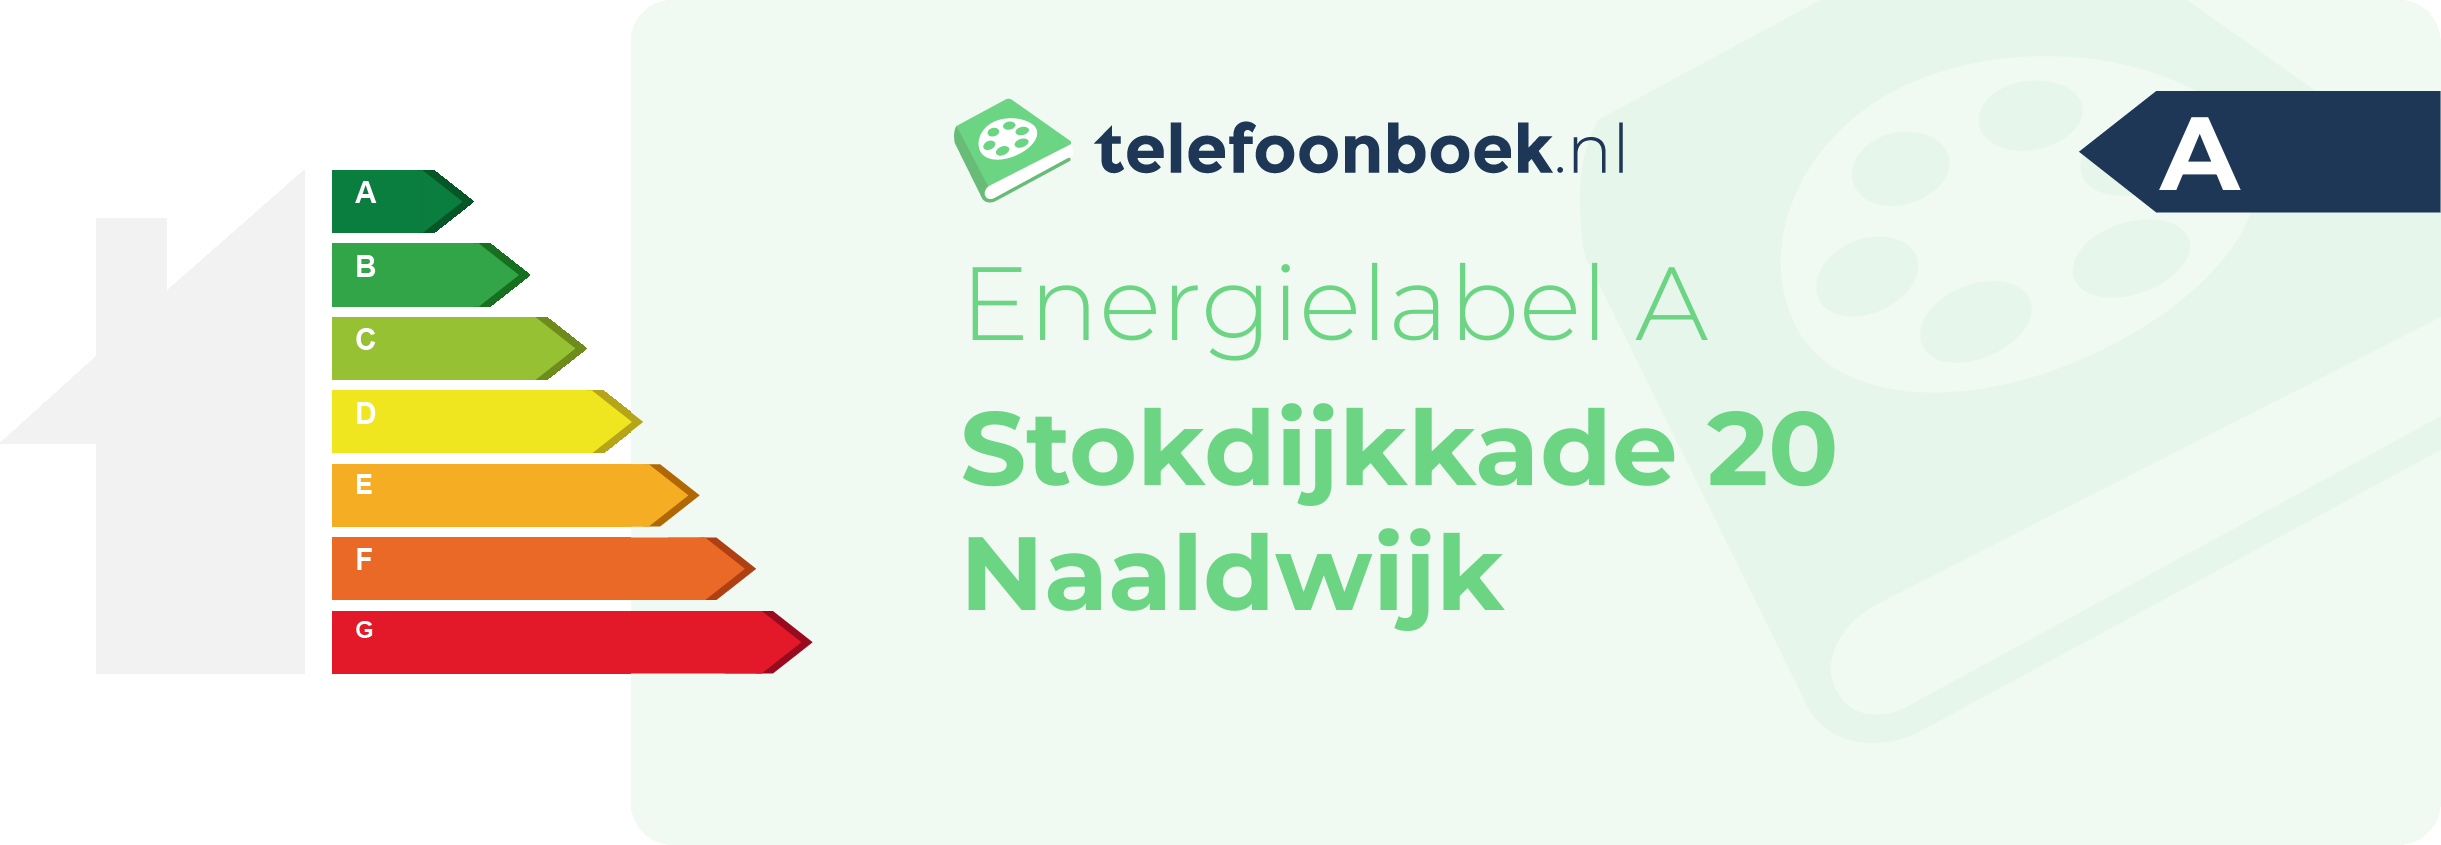 Energielabel Stokdijkkade 20 Naaldwijk